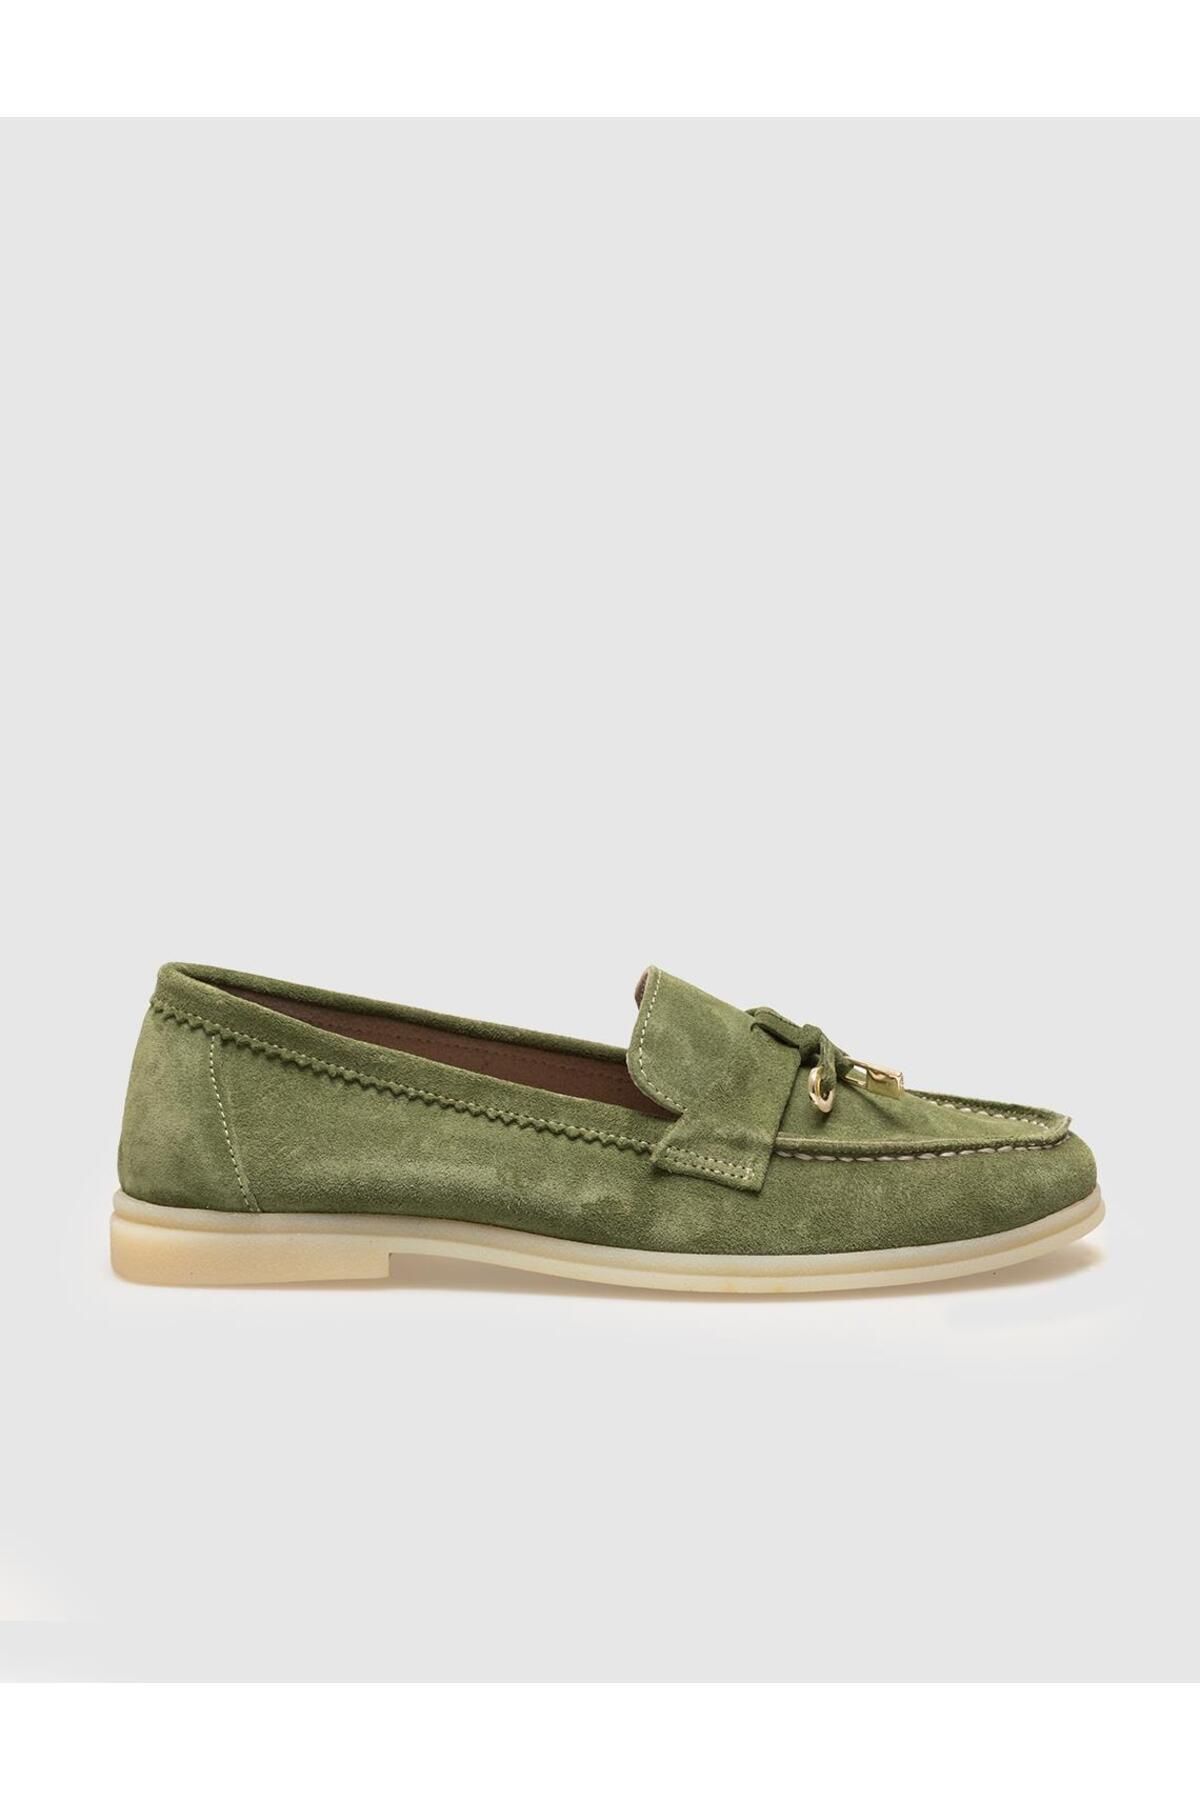 Cabani Hakiki Deri Yeşil Süet Püskül Detaylı Kadın Günlük Ayakkabı